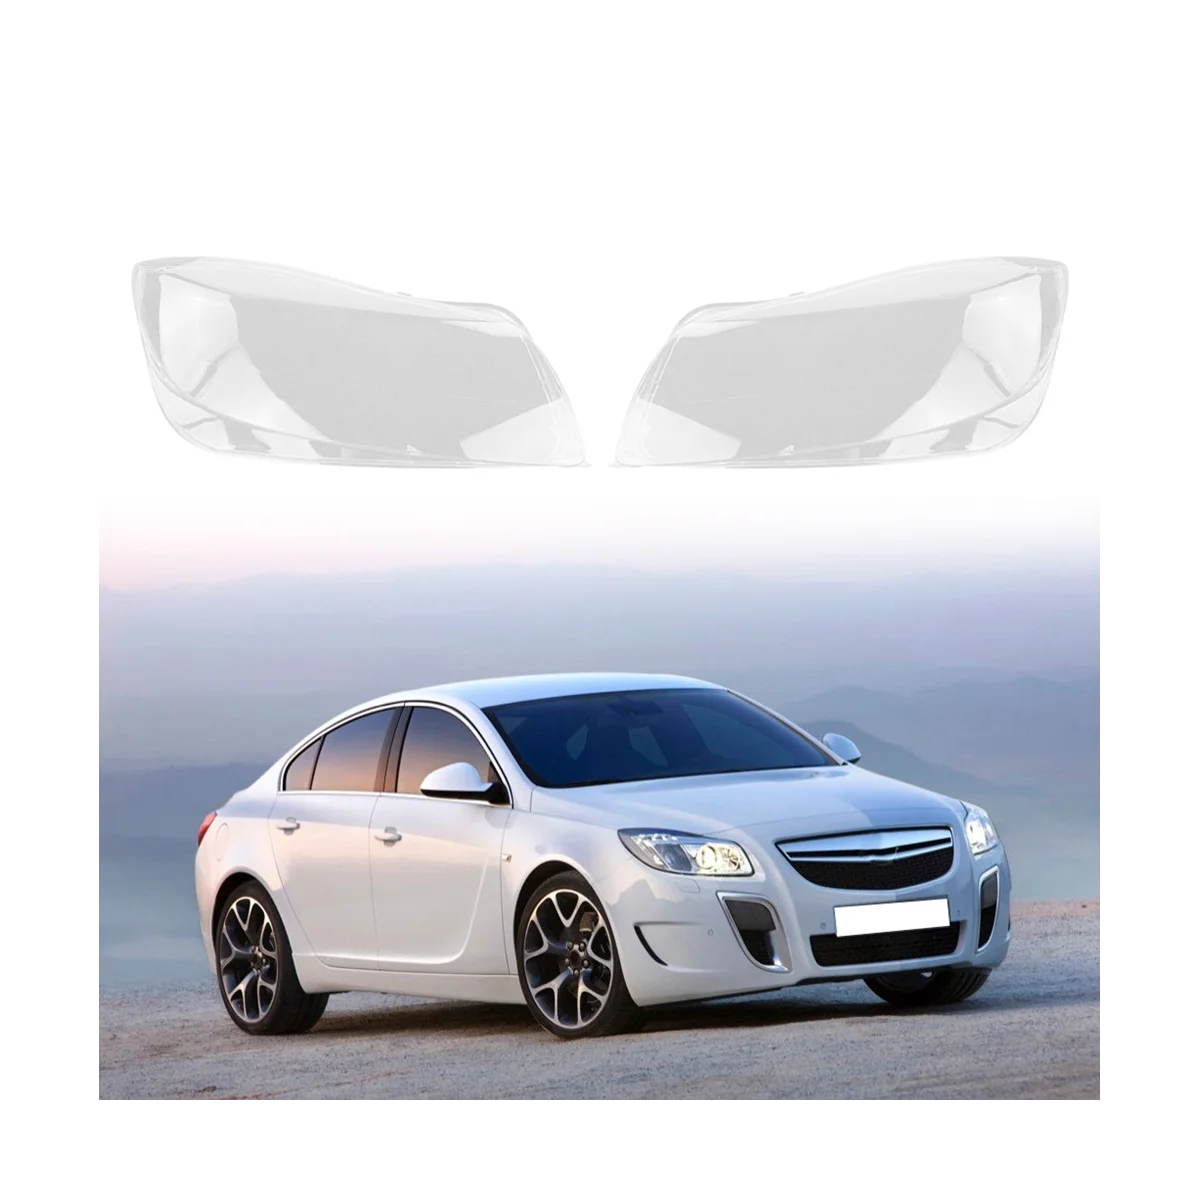 

Чехол для правой фары автомобиля, прозрачная крышка для объектива, чехол для фары для Buick Opel Insignia OPC 2009-2012